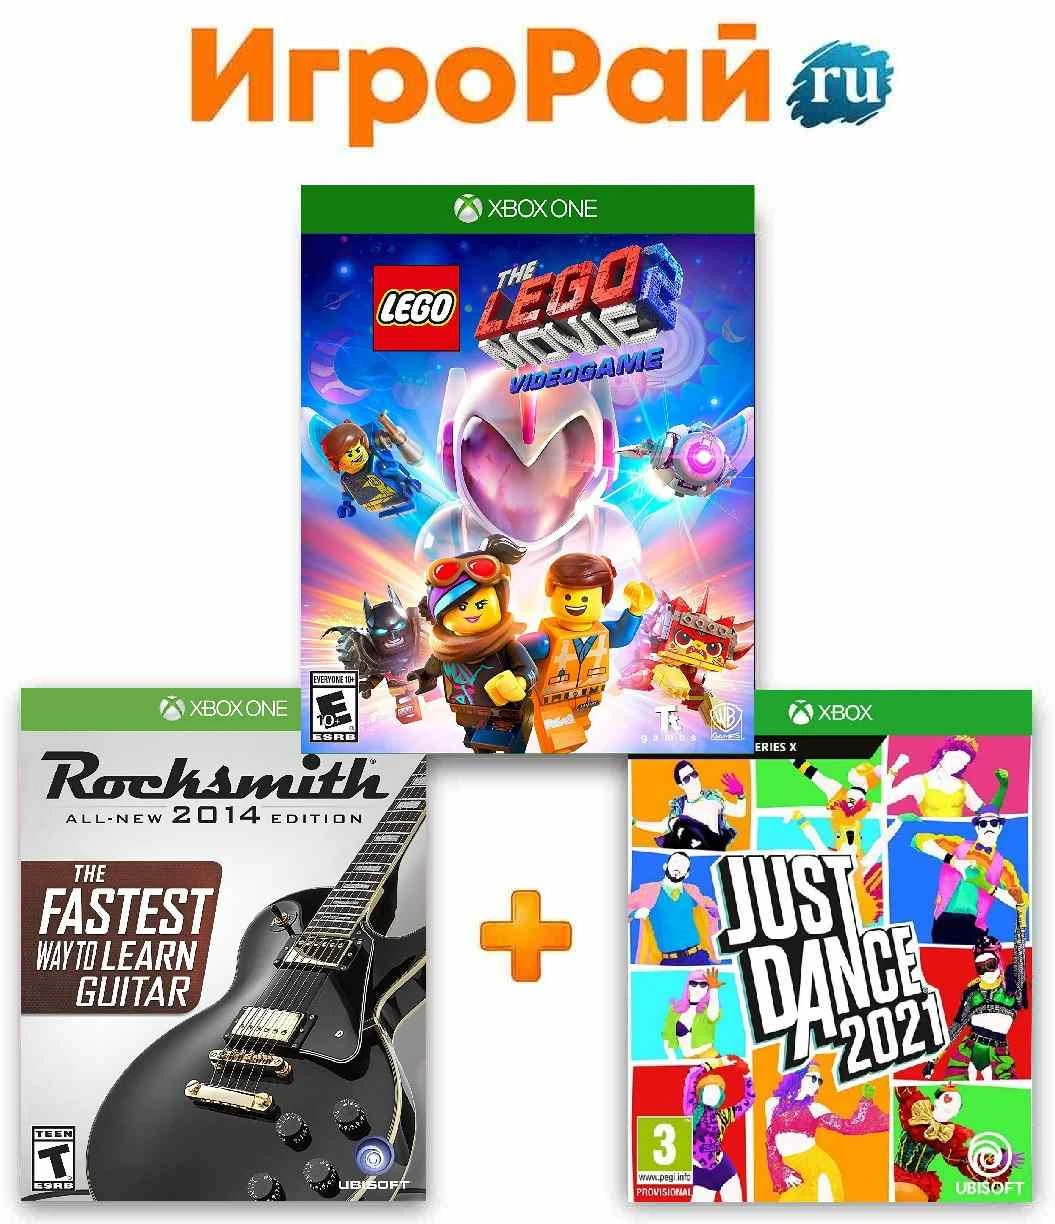 Funda para XBOX One, videojuego LEGO Movie 2 + Rocksmith edición 2014 (La guitarra + La Guitarra) + Just Dance juegos| - AliExpress